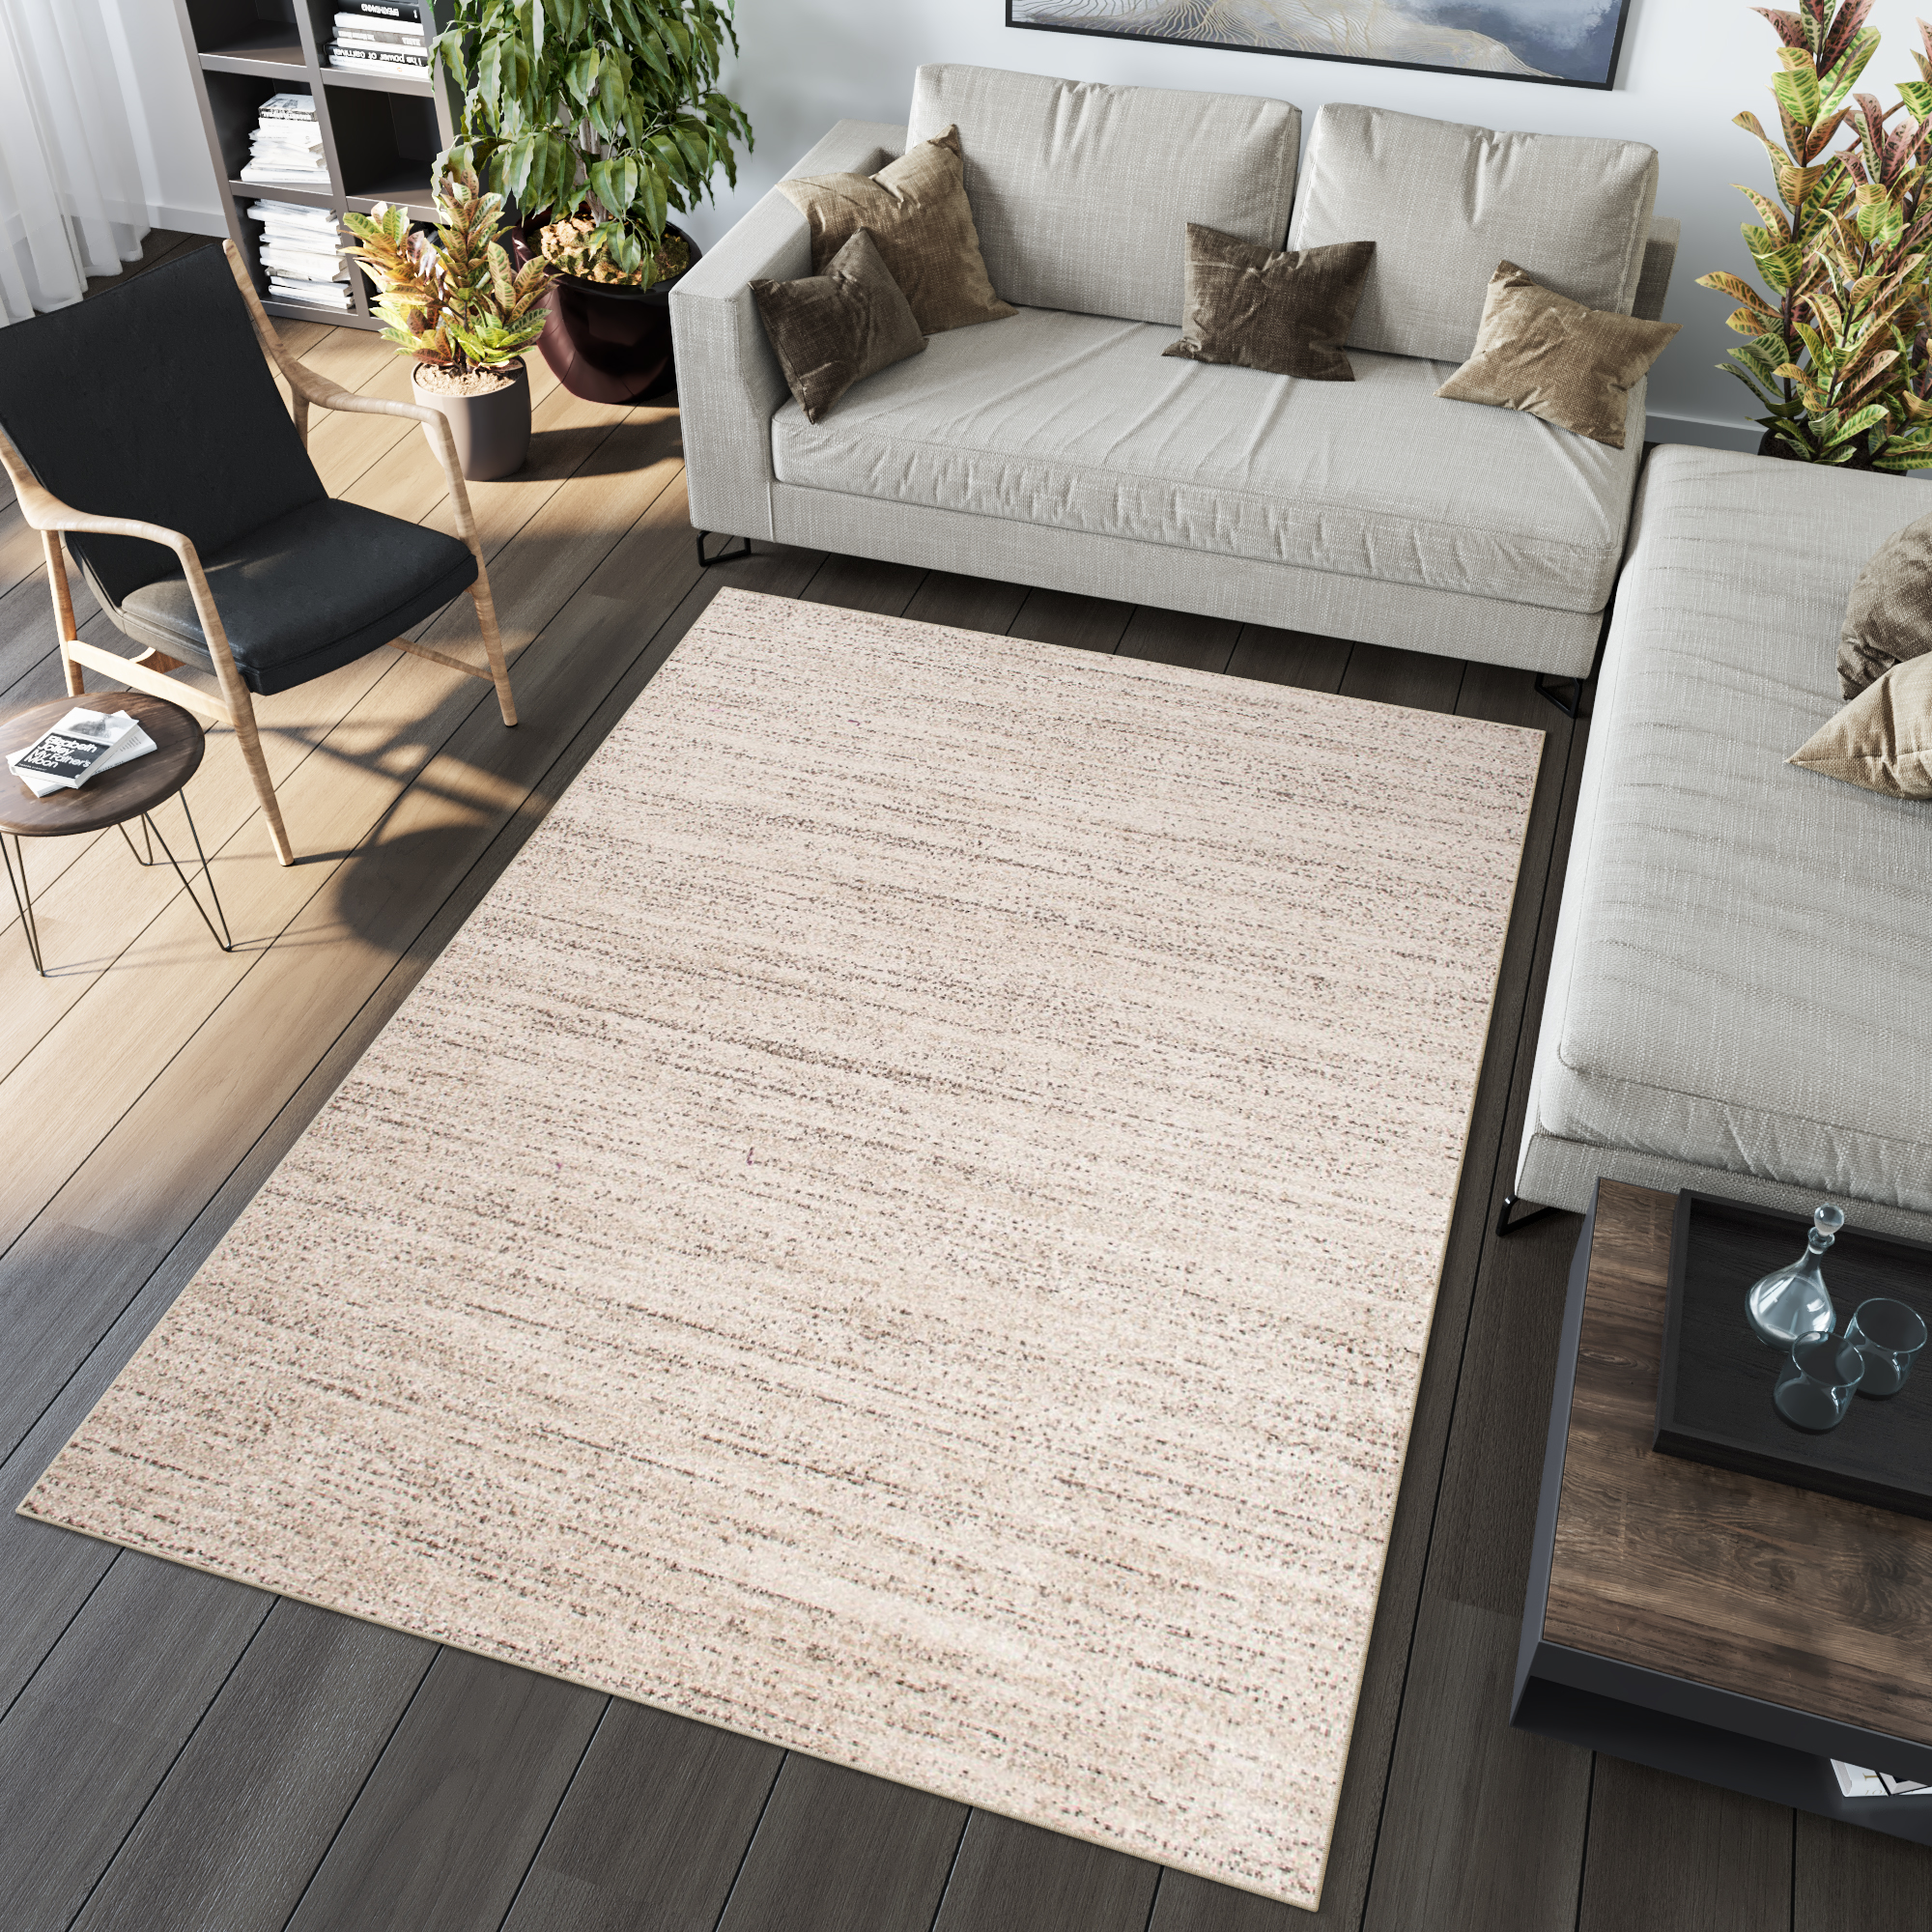 Modern Kurzflor Design Beige Meliert Teppich Teppiche Creme | eBay Wohnzimmer Verwischt